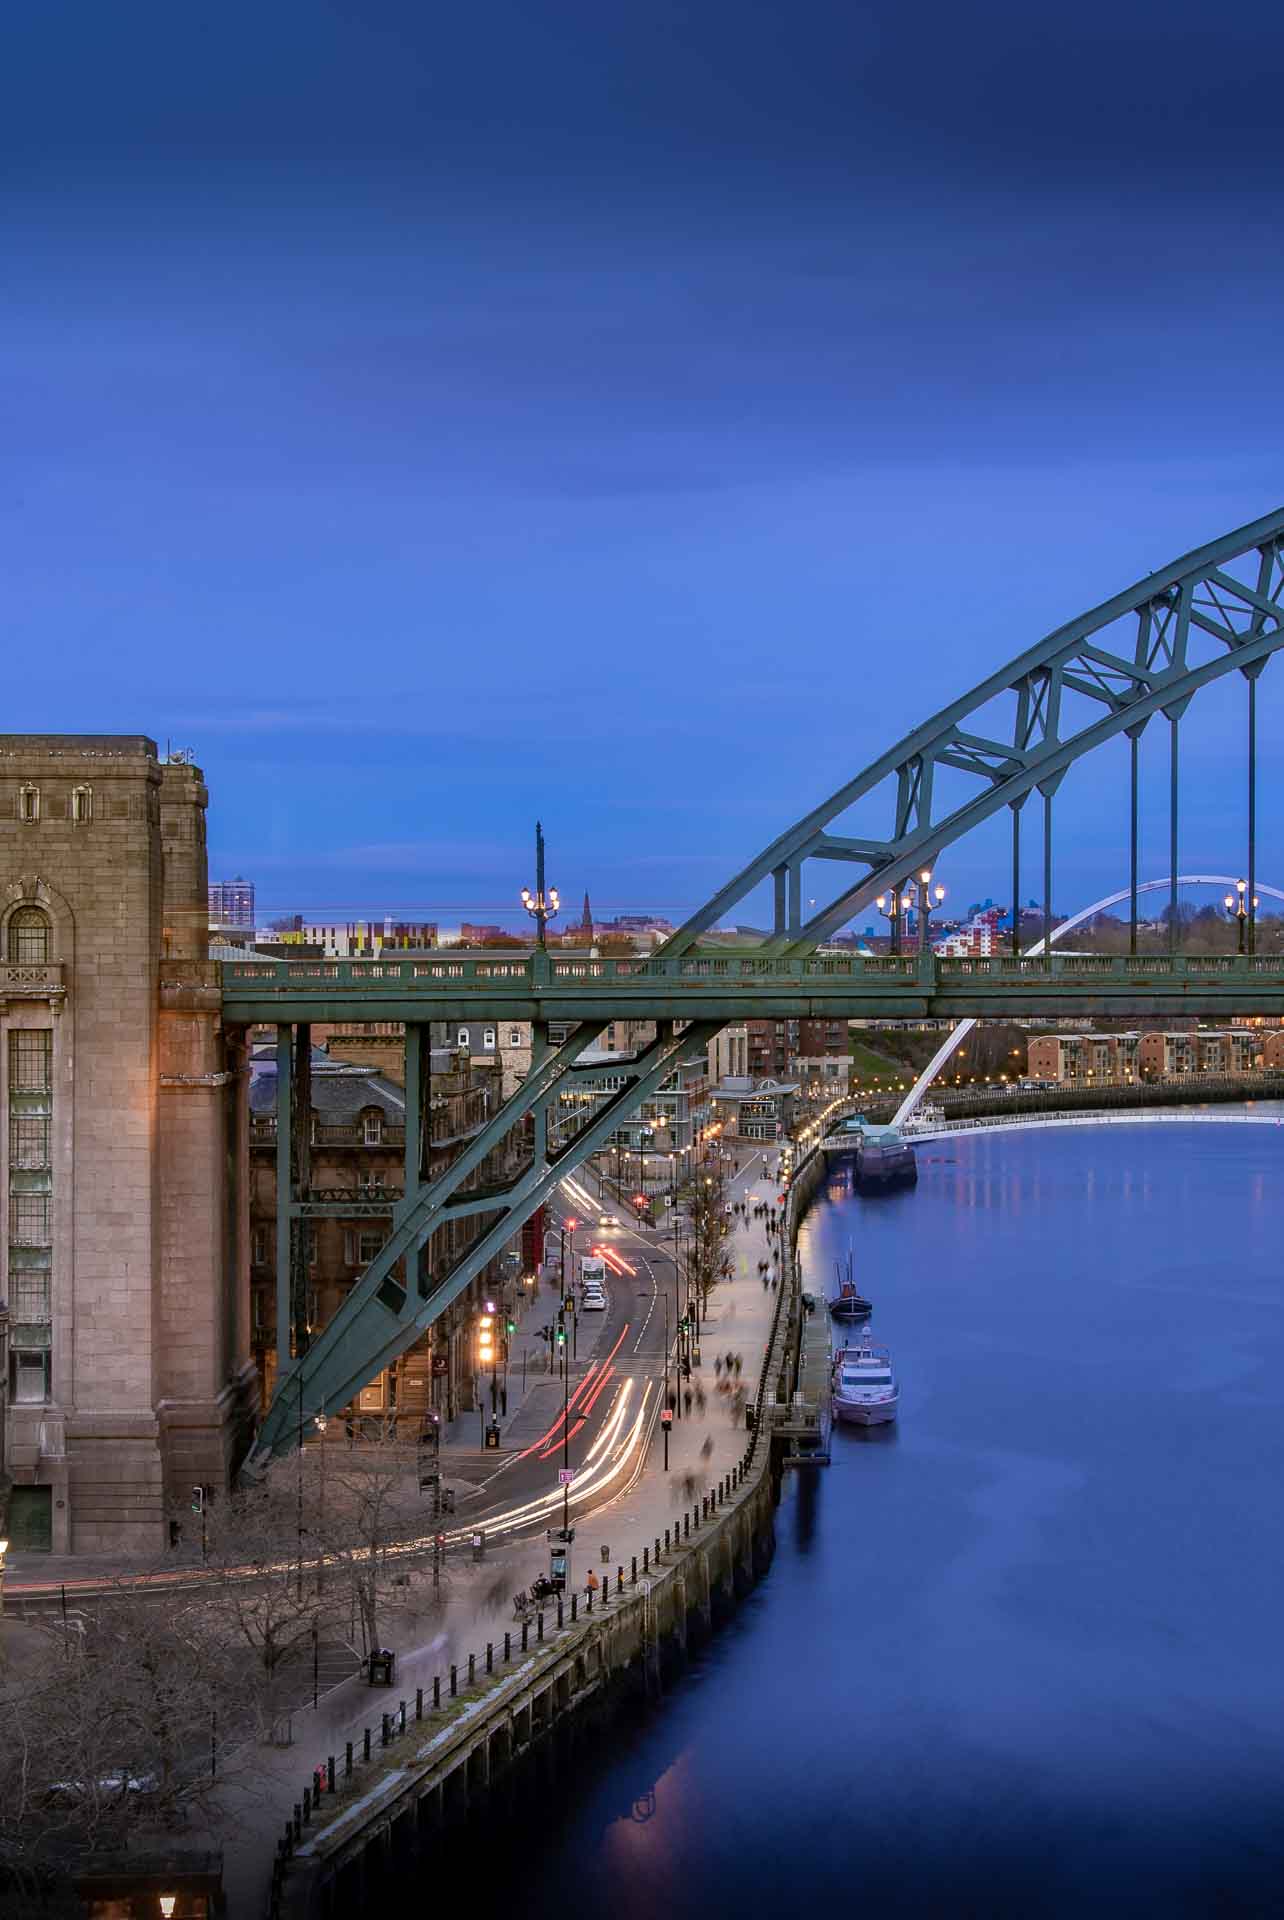 Tyne Bridge met uitzicht op de rivier in Newcastle